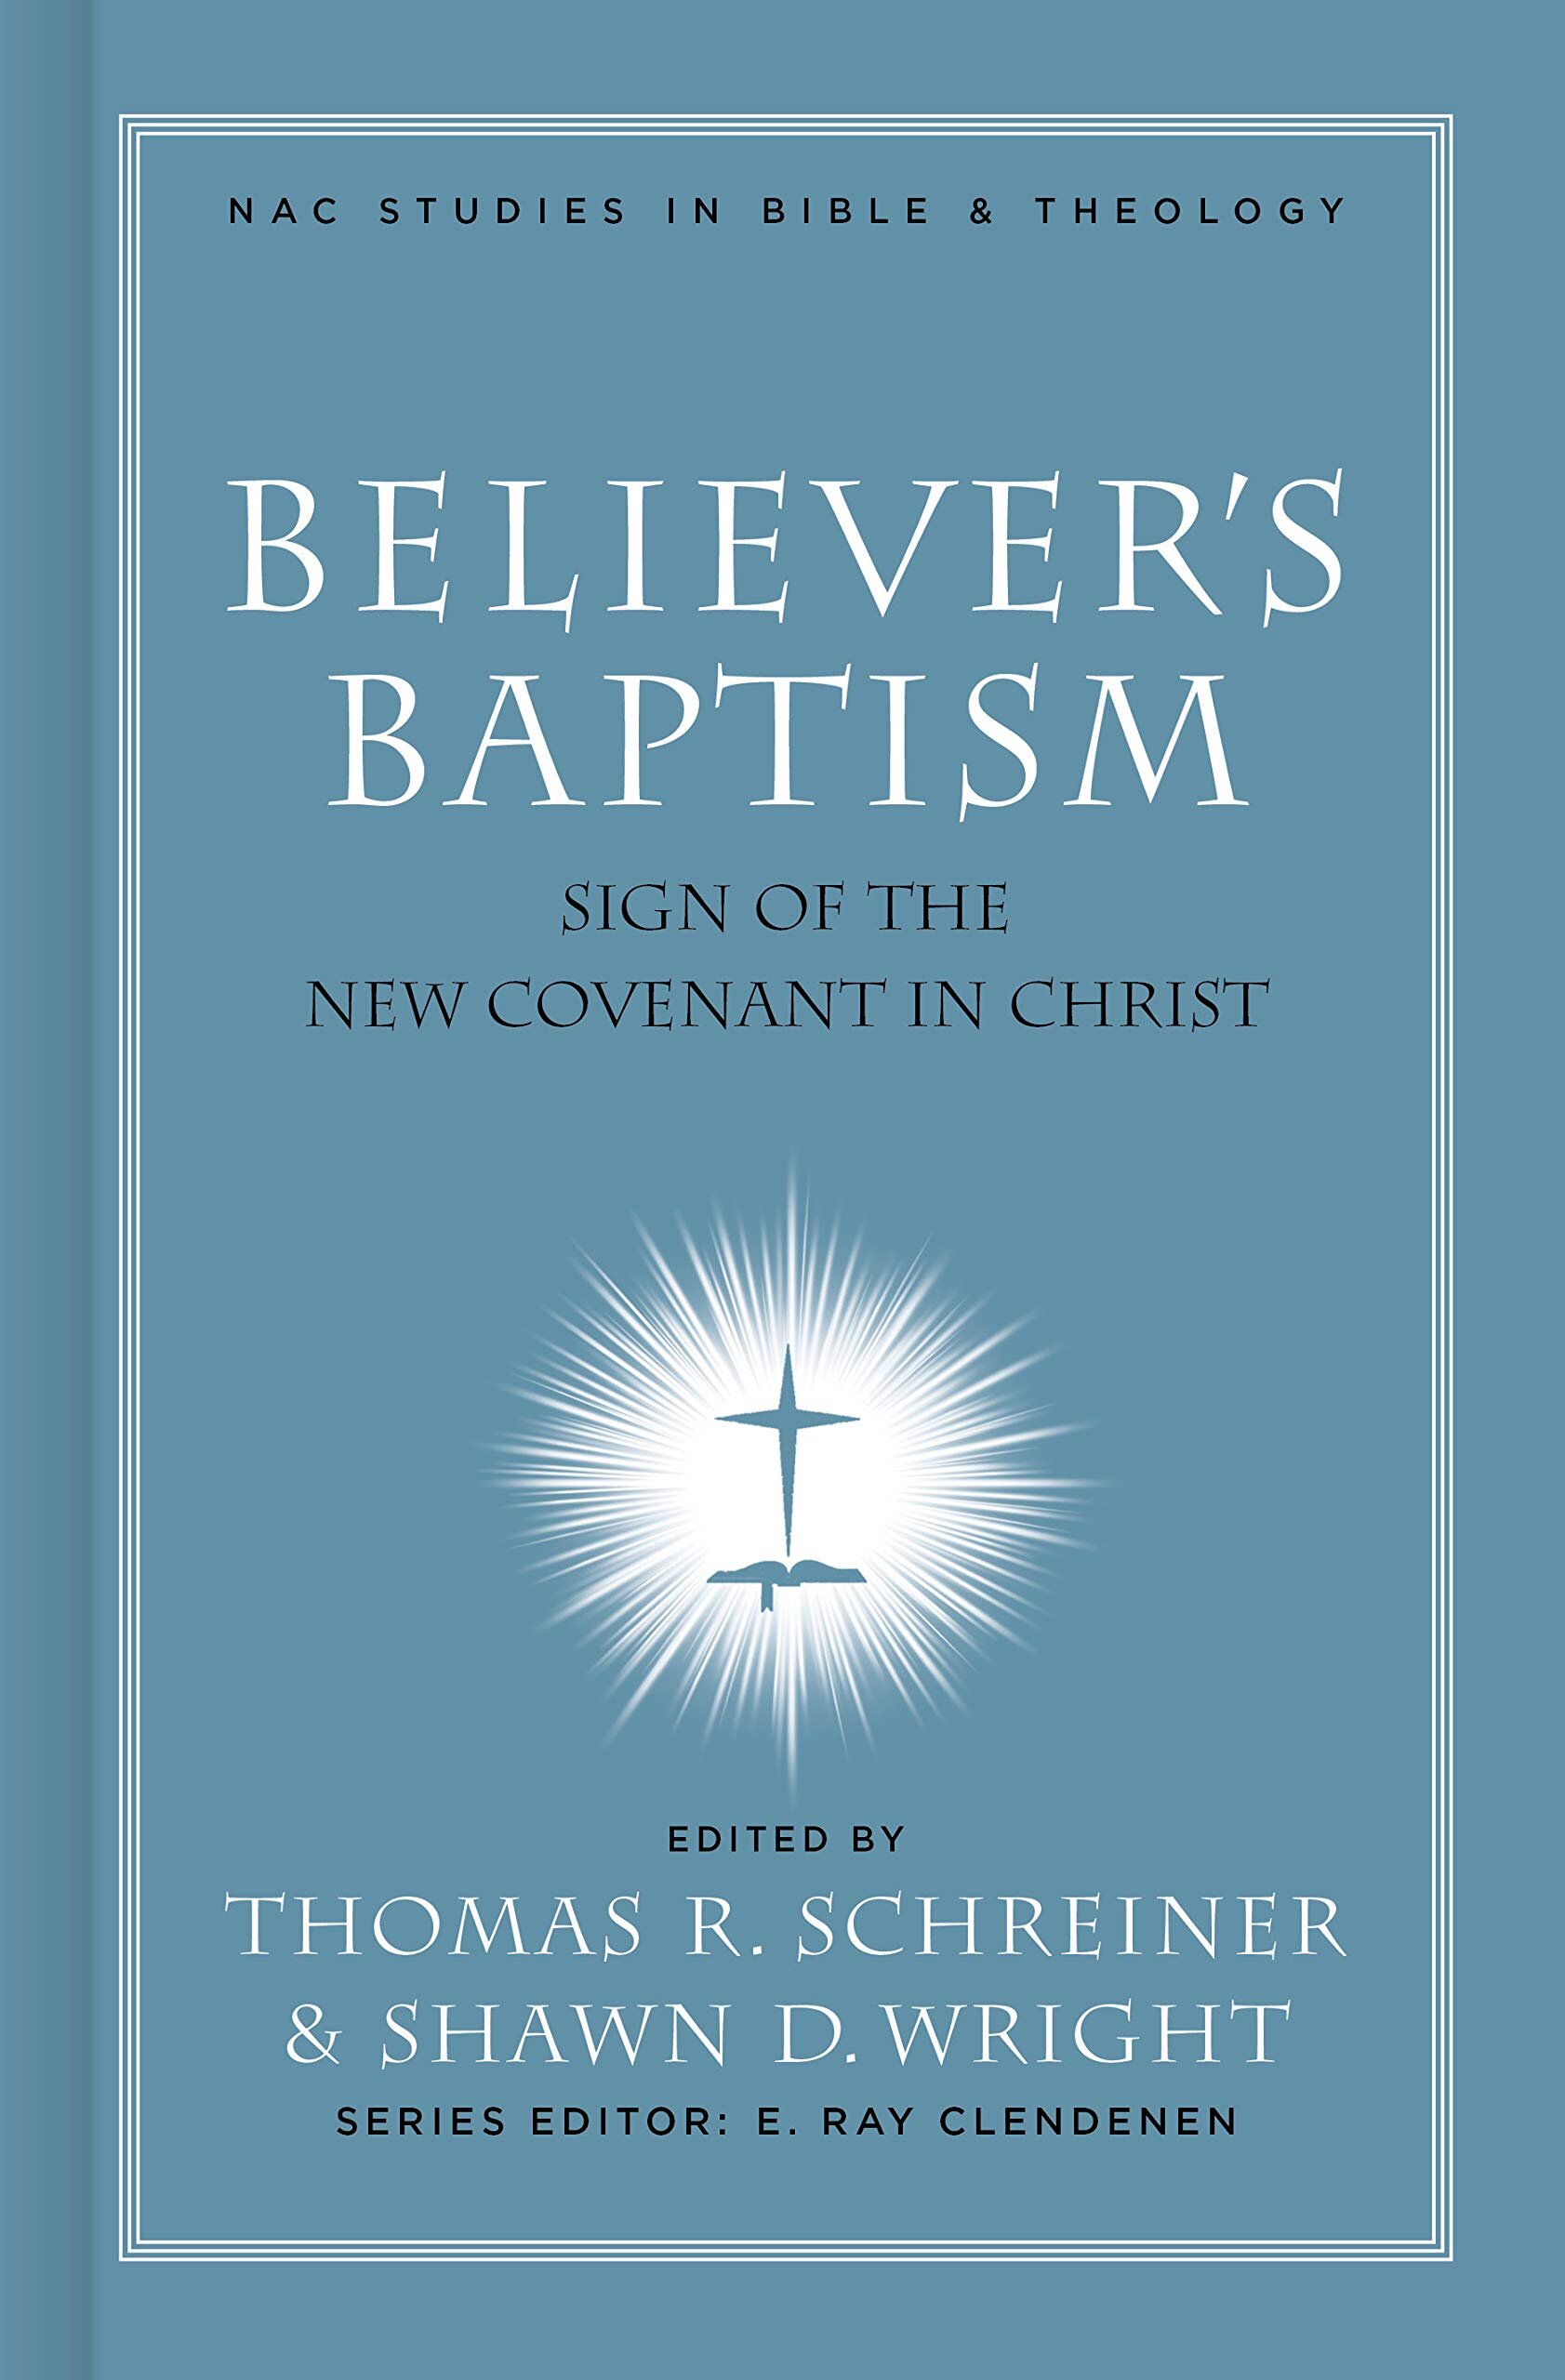 Believer's Baptism by Tom Schreiner